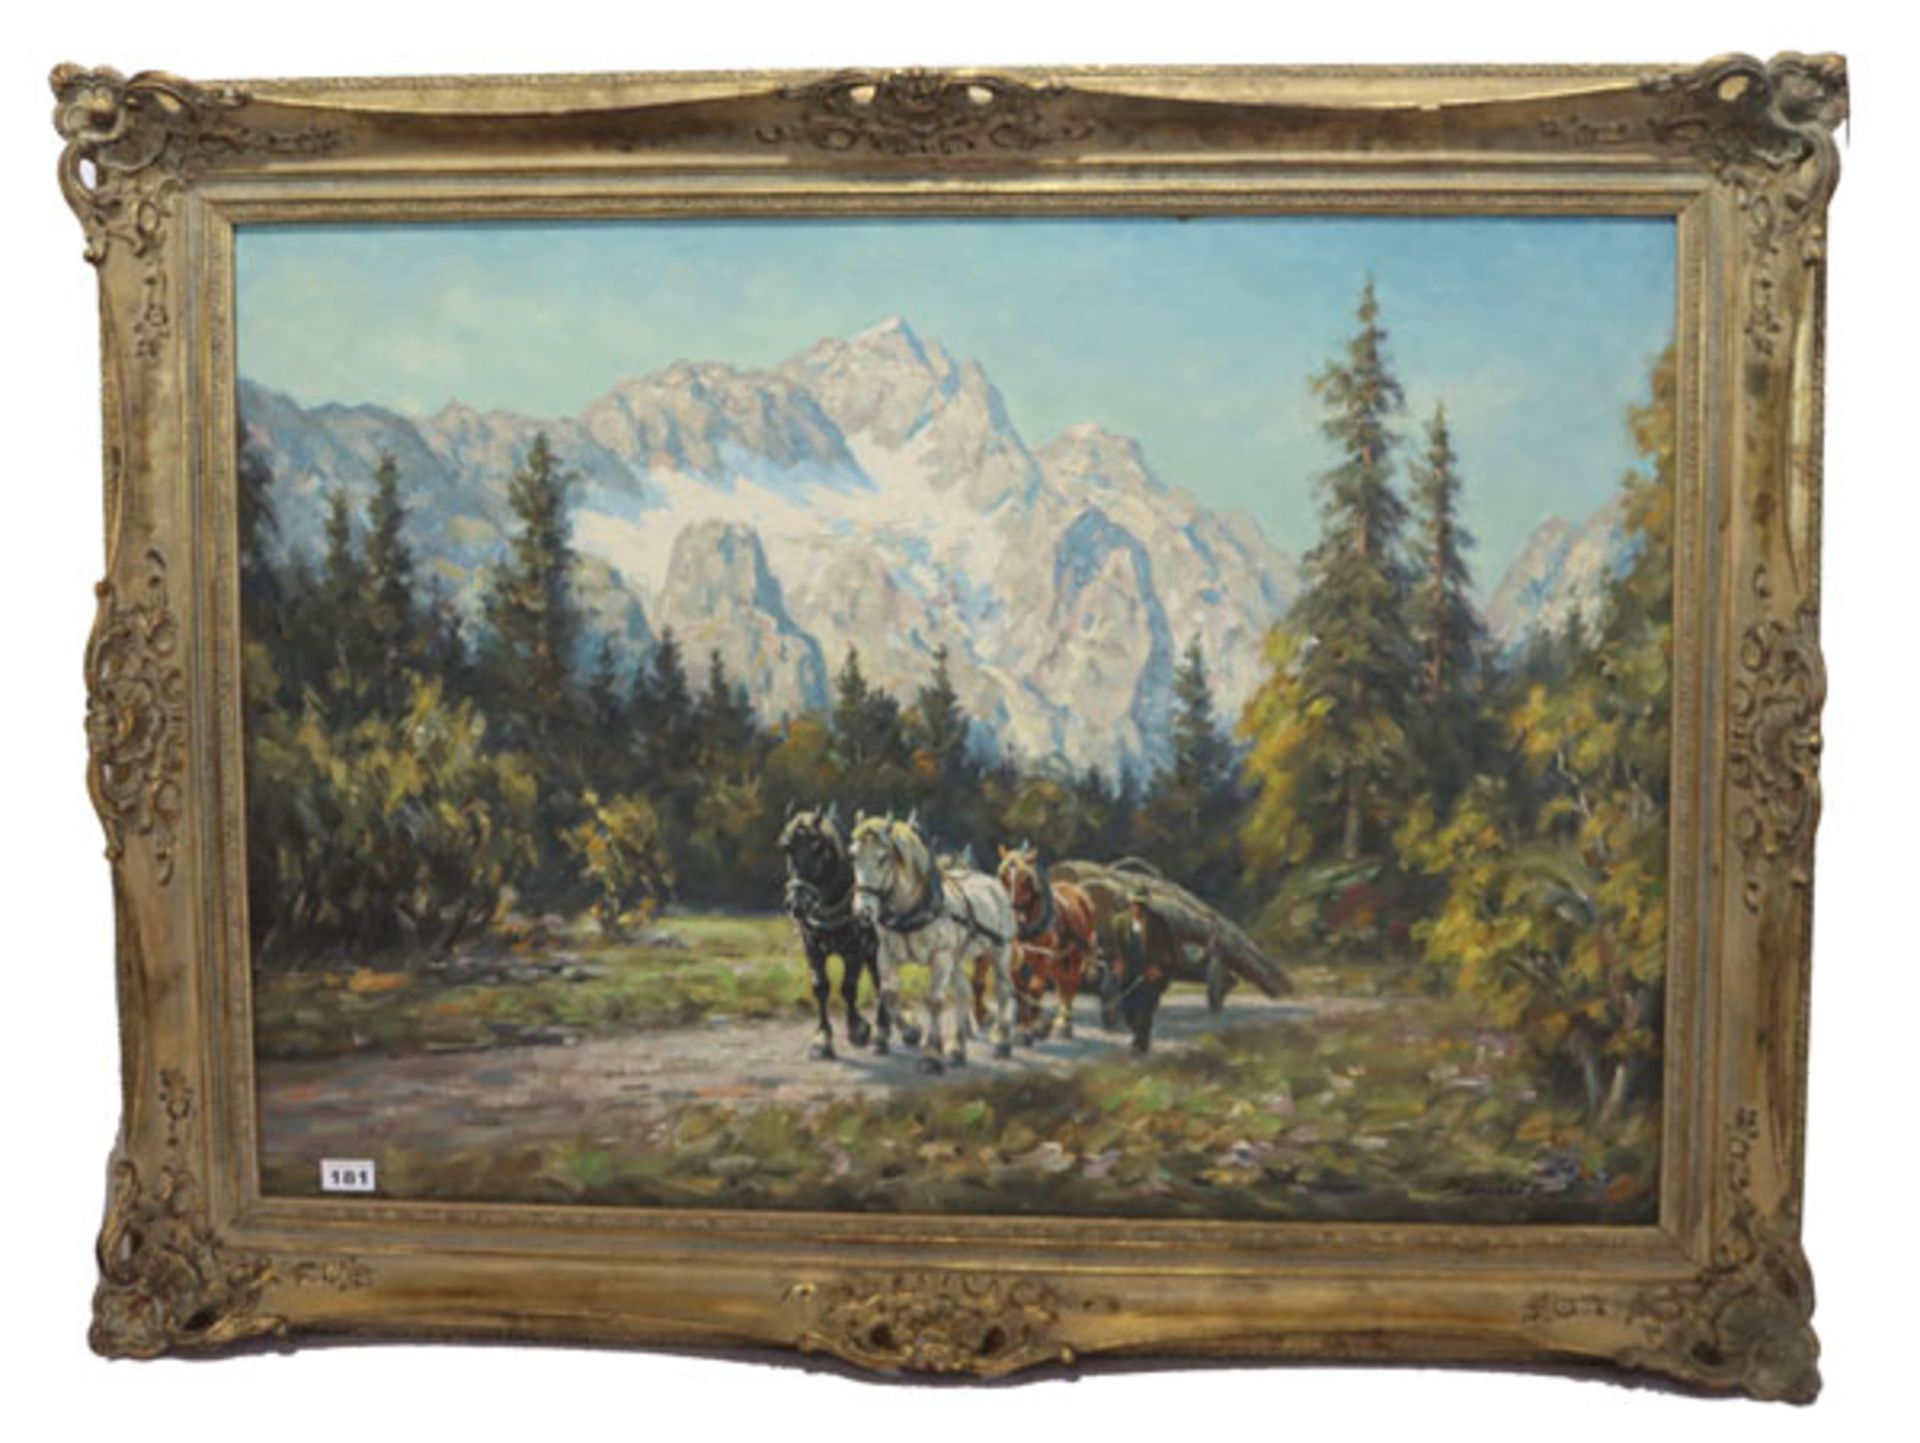 Gemälde ÖL/LW 'Pferdefuhrwerk im Wettersteingebirge', signiert K. Demetz, Karl Demetz, * 1909